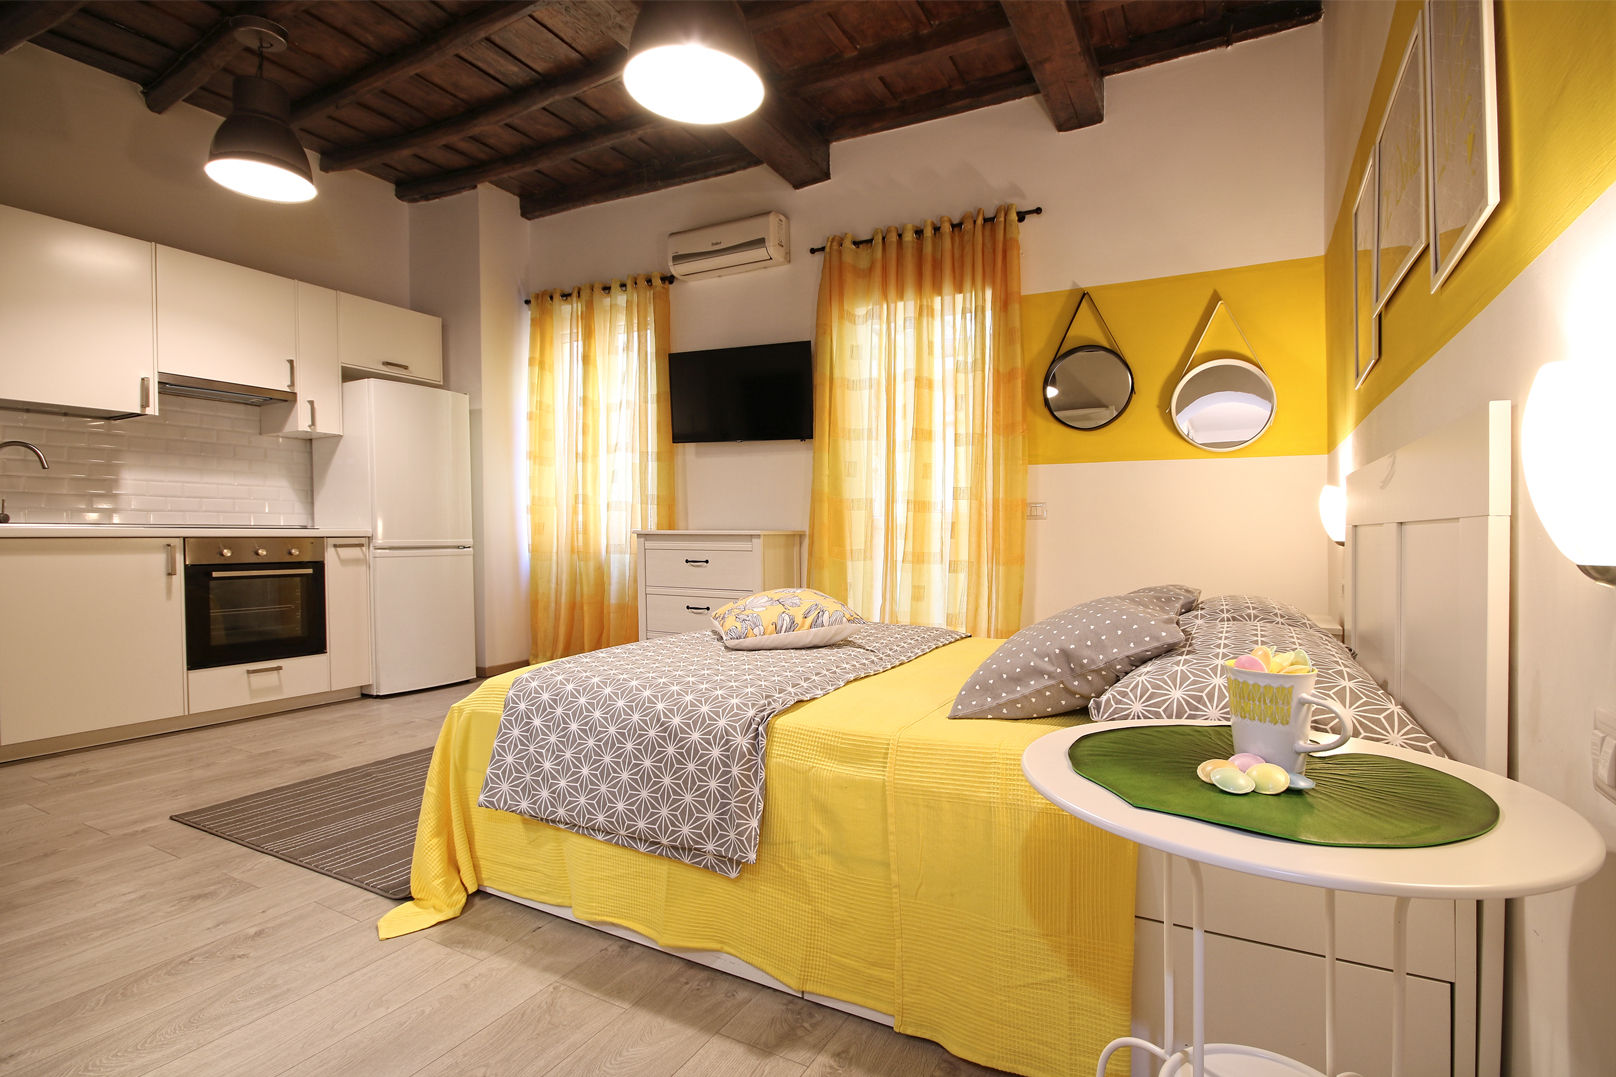 Relooking Appartamento in Quartiere Monti, Roma, Creattiva Home ReDesigner - Consulente d'immagine immobiliare Creattiva Home ReDesigner - Consulente d'immagine immobiliare Modern style bedroom